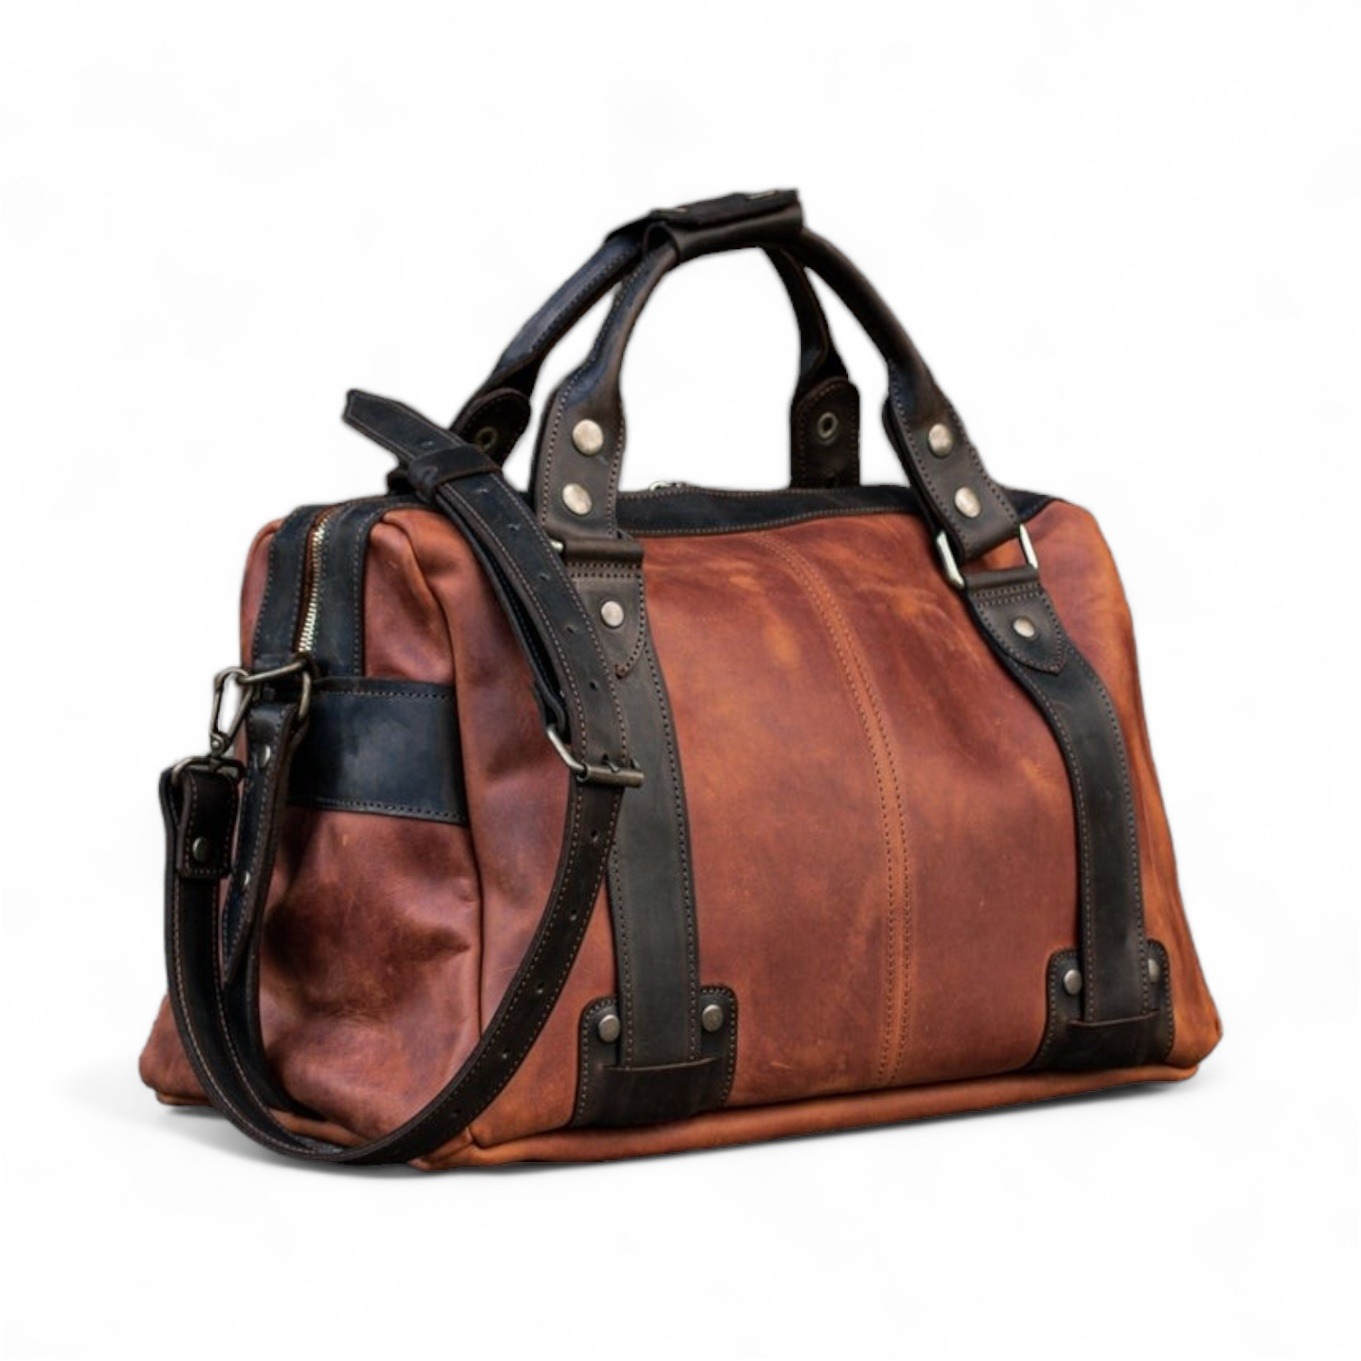 Stylish Leather Travel Bag